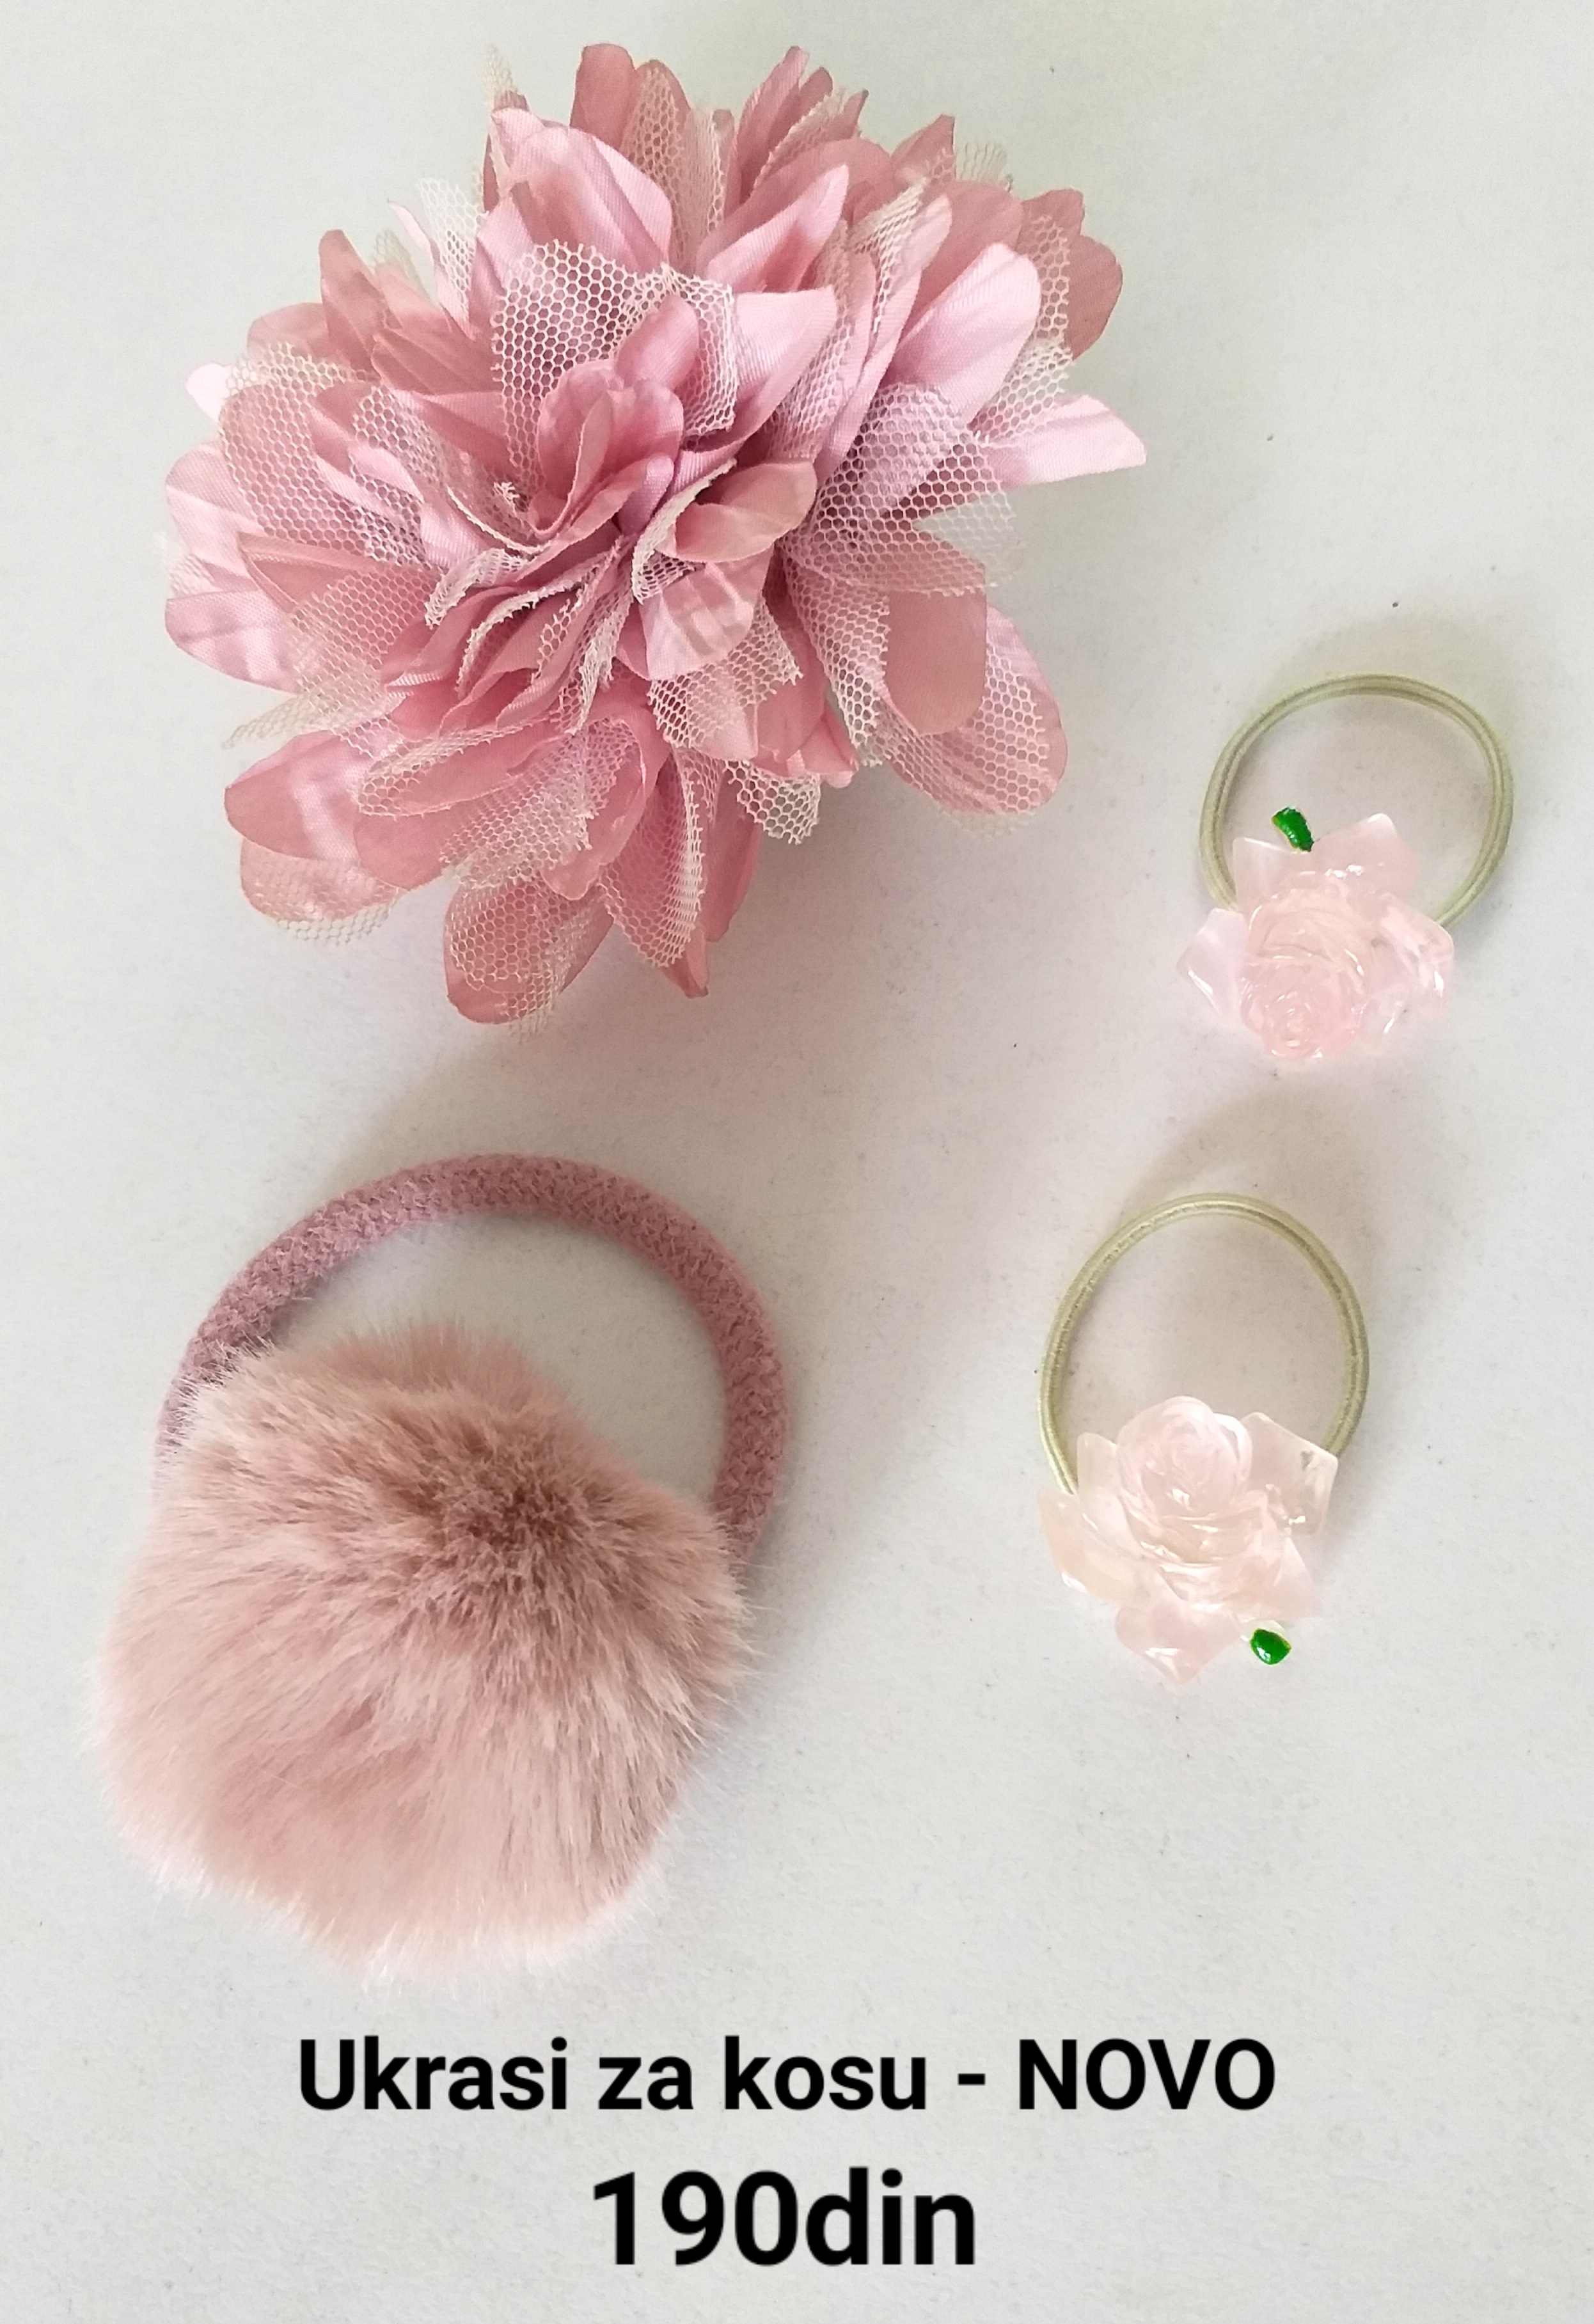 Ukrasi za kosu roze - šnala cvet i gumice - NOVO